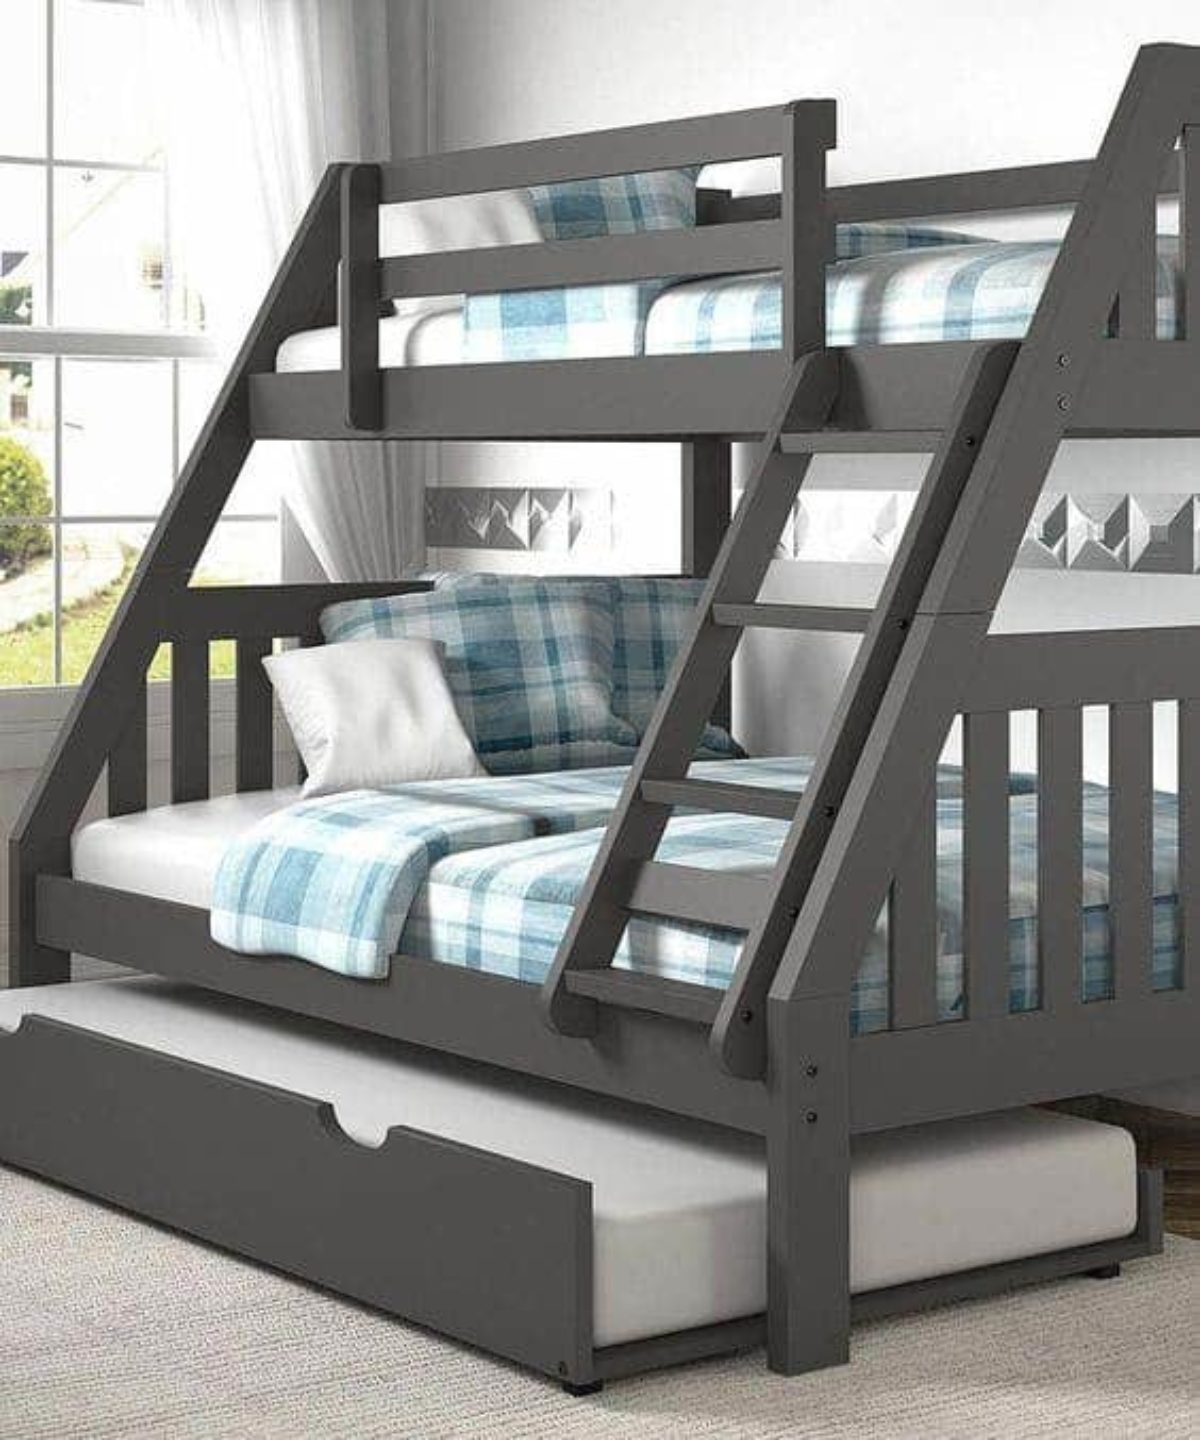 5 Steps To Make A Bunk Bed Ladder Safer, Metal Bunk Bed Ladder Hurts Feet